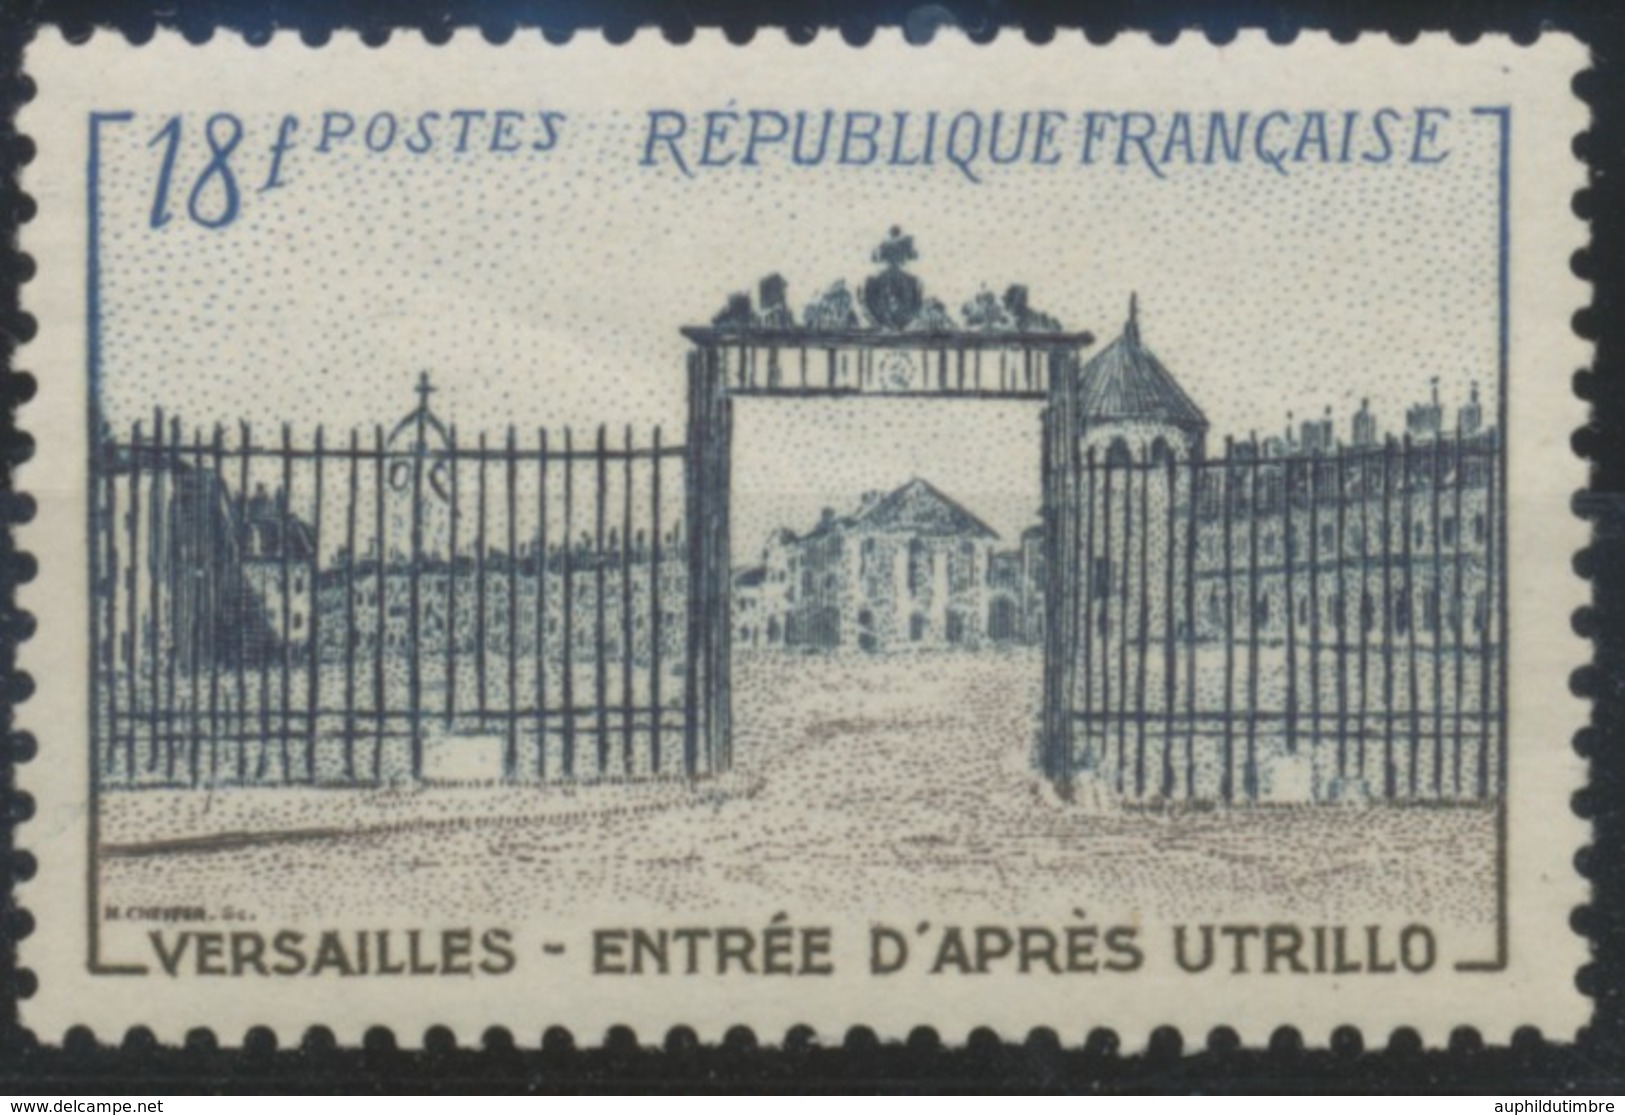 Grille D'entrée Du Château De Versailles. Type De 1952 (no 939) 18f. Brun-lilas, Bleu-noir Et Bleu. Neuf Luxe ** Y988 - Ungebraucht